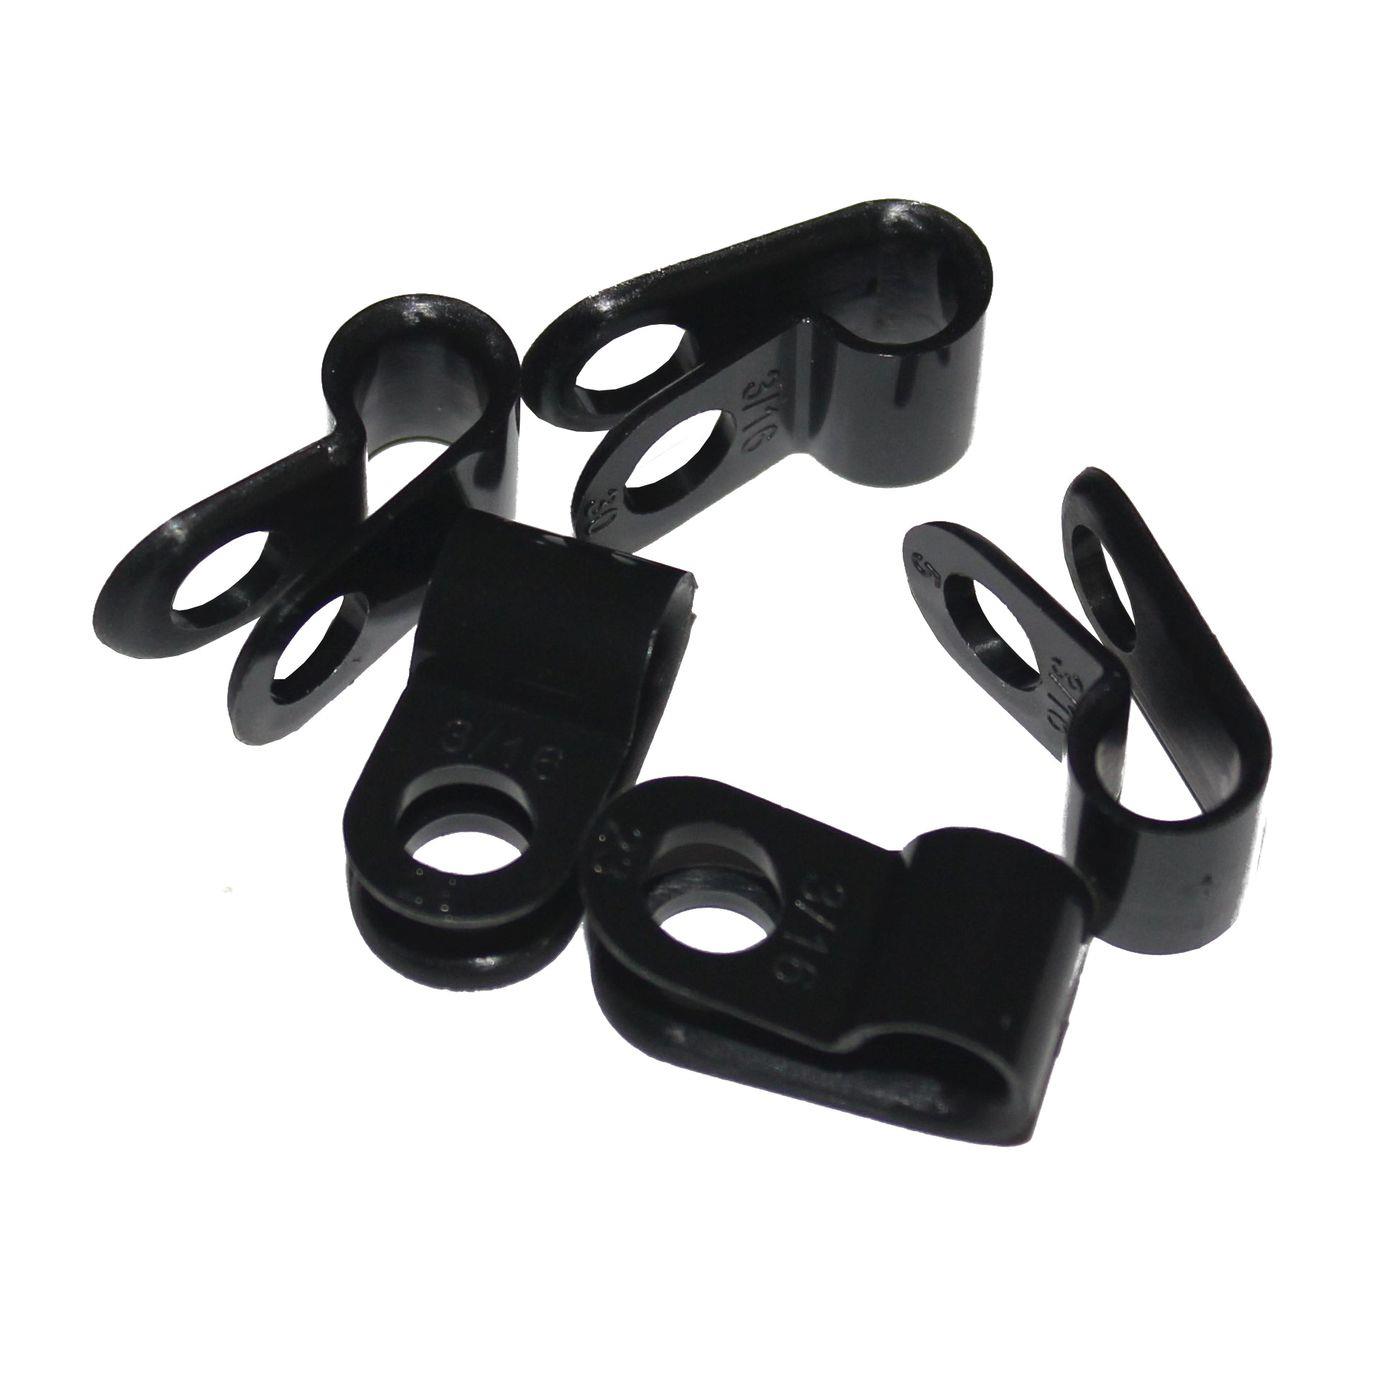 100x P-Clip für Kabel 5mm schwarz Nylon Kabelschelle Kabelfixierung Chassisklemmen